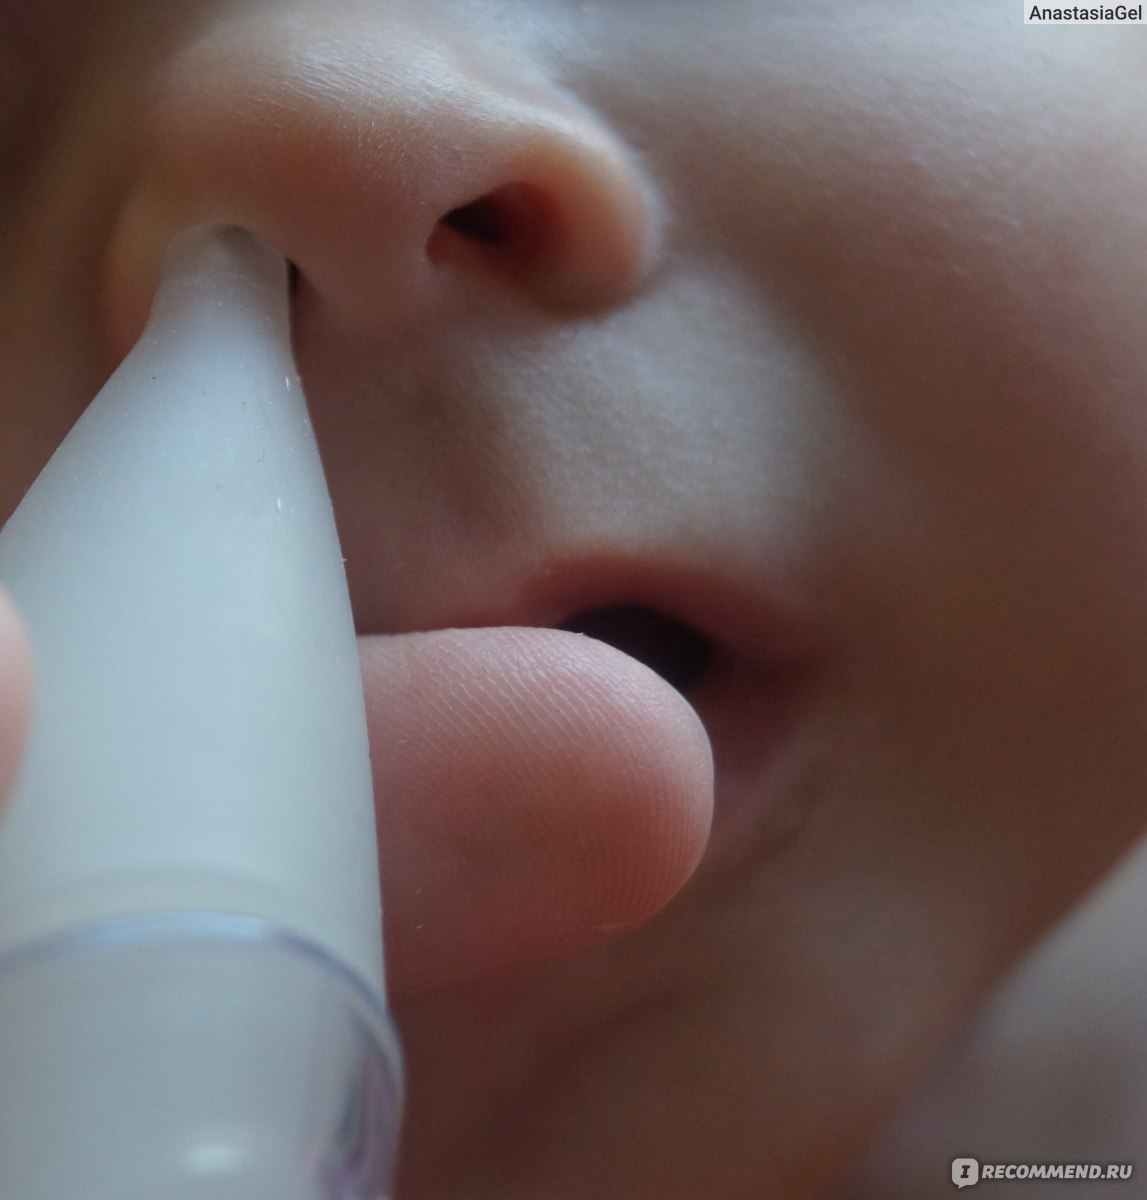 Как чистить носик новорождённому ребенку от козявок pulmono.ru
как чистить носик новорождённому ребенку от козявок